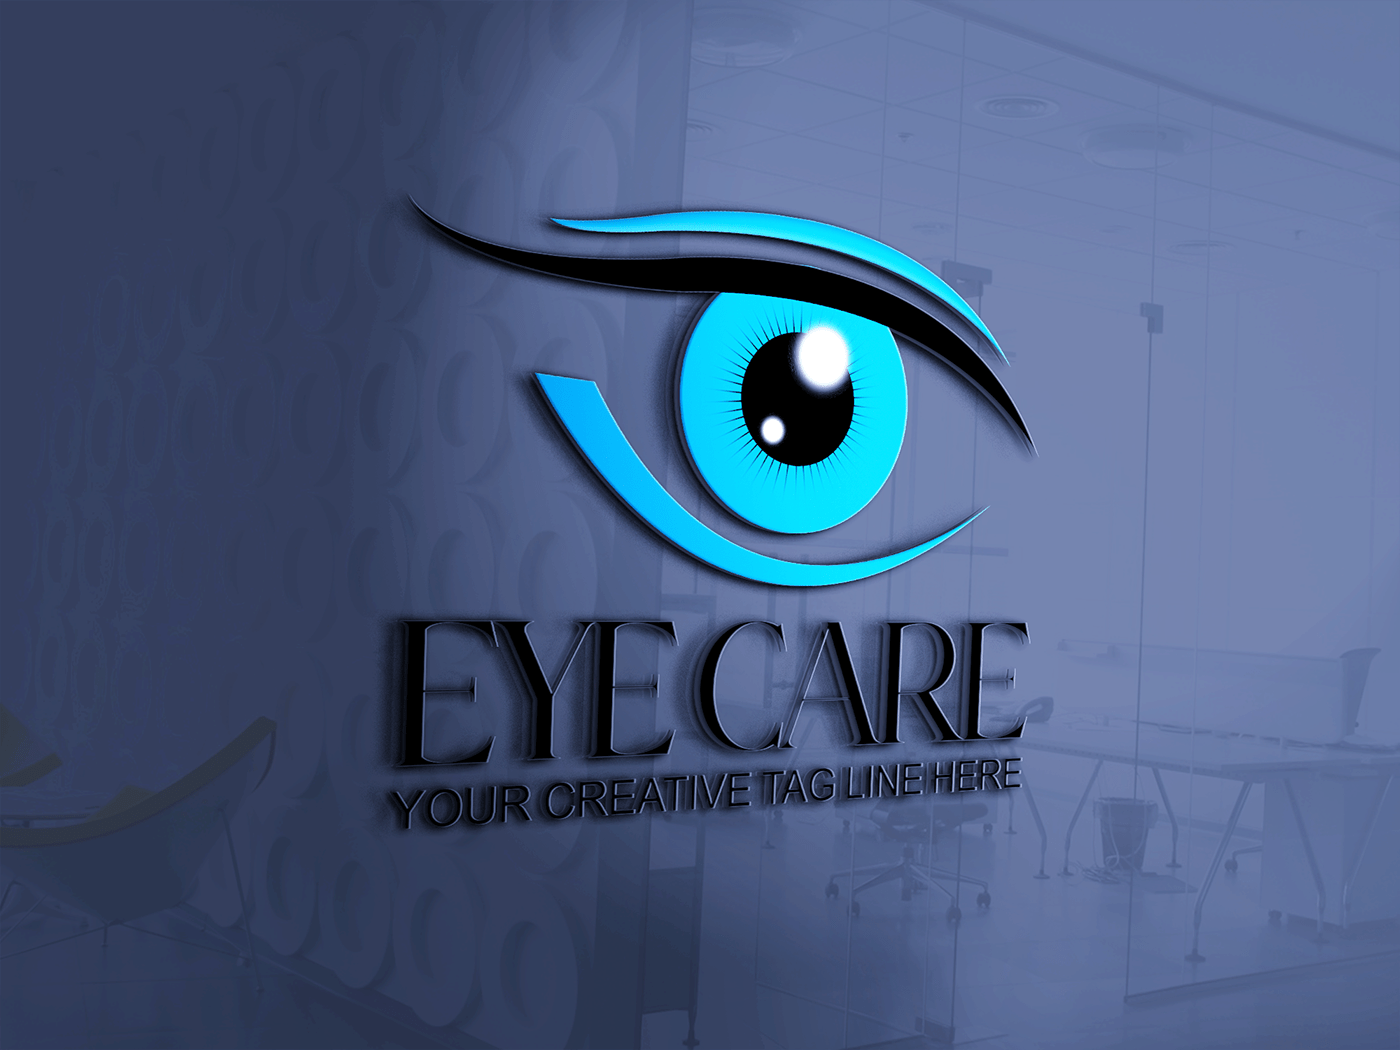 adobe illustrator Adobe Photoshop brand identity eye care logo logo Logo Design logos Logotype minimalist modern